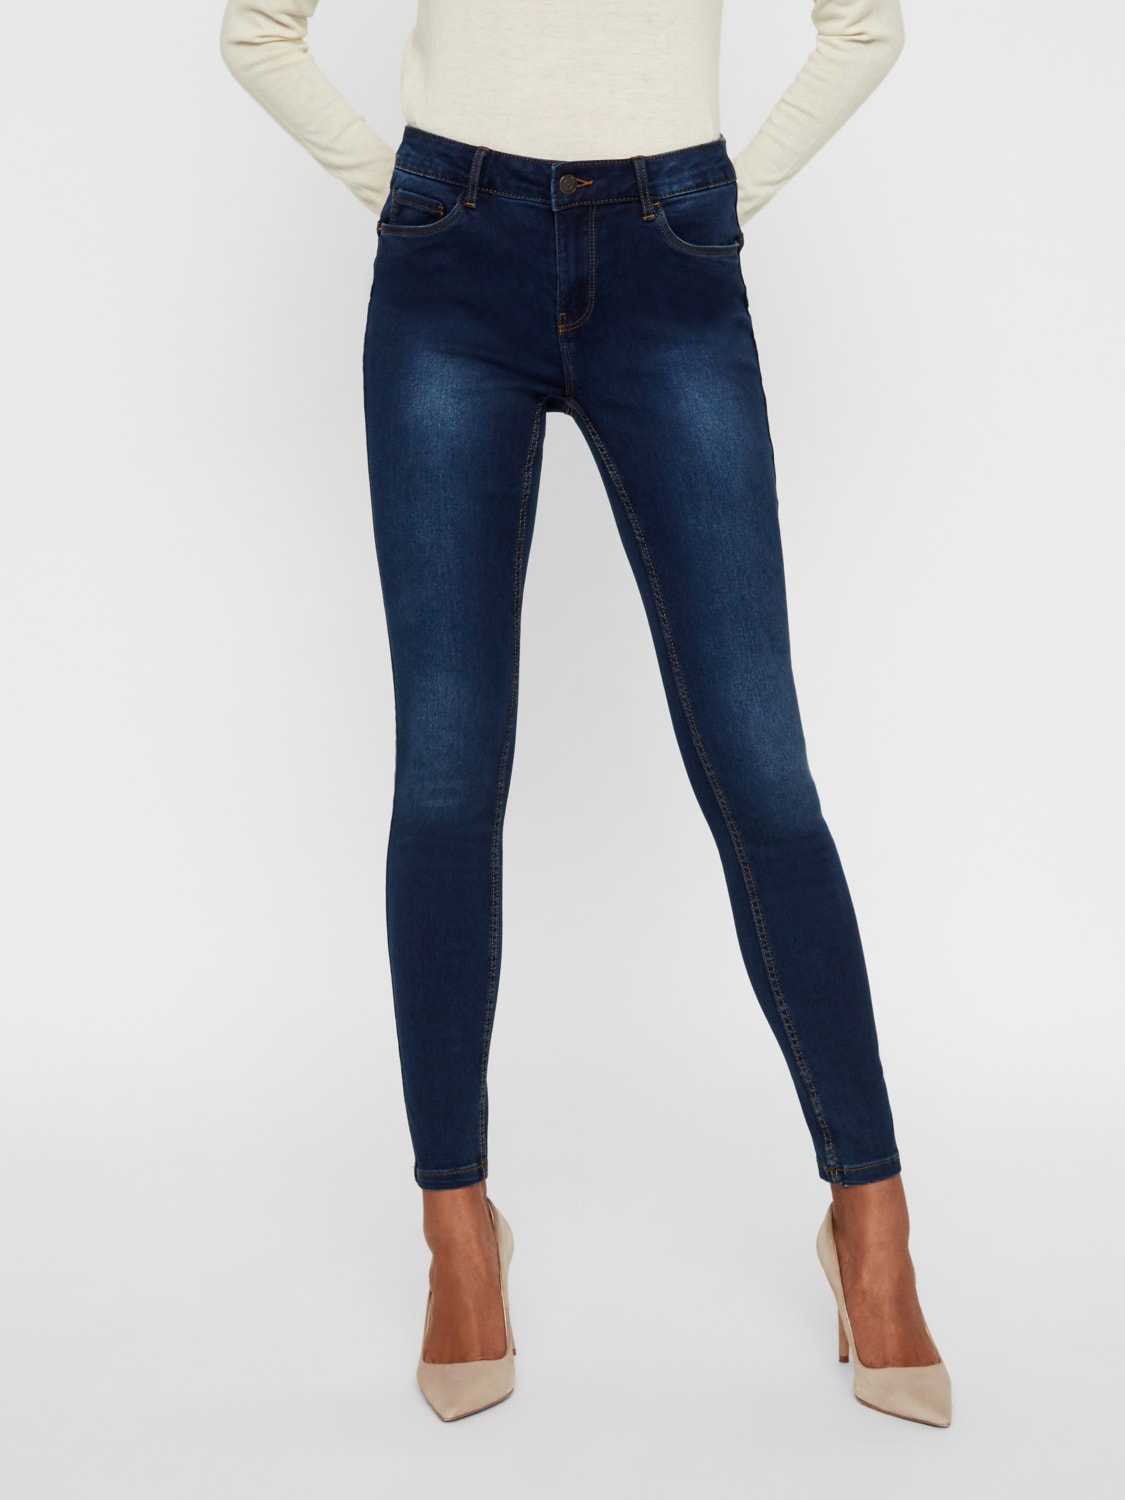 Vero Moda VMSEVEN Vita media Slim Fit Jeans -Dark Blue Denim - 10217514